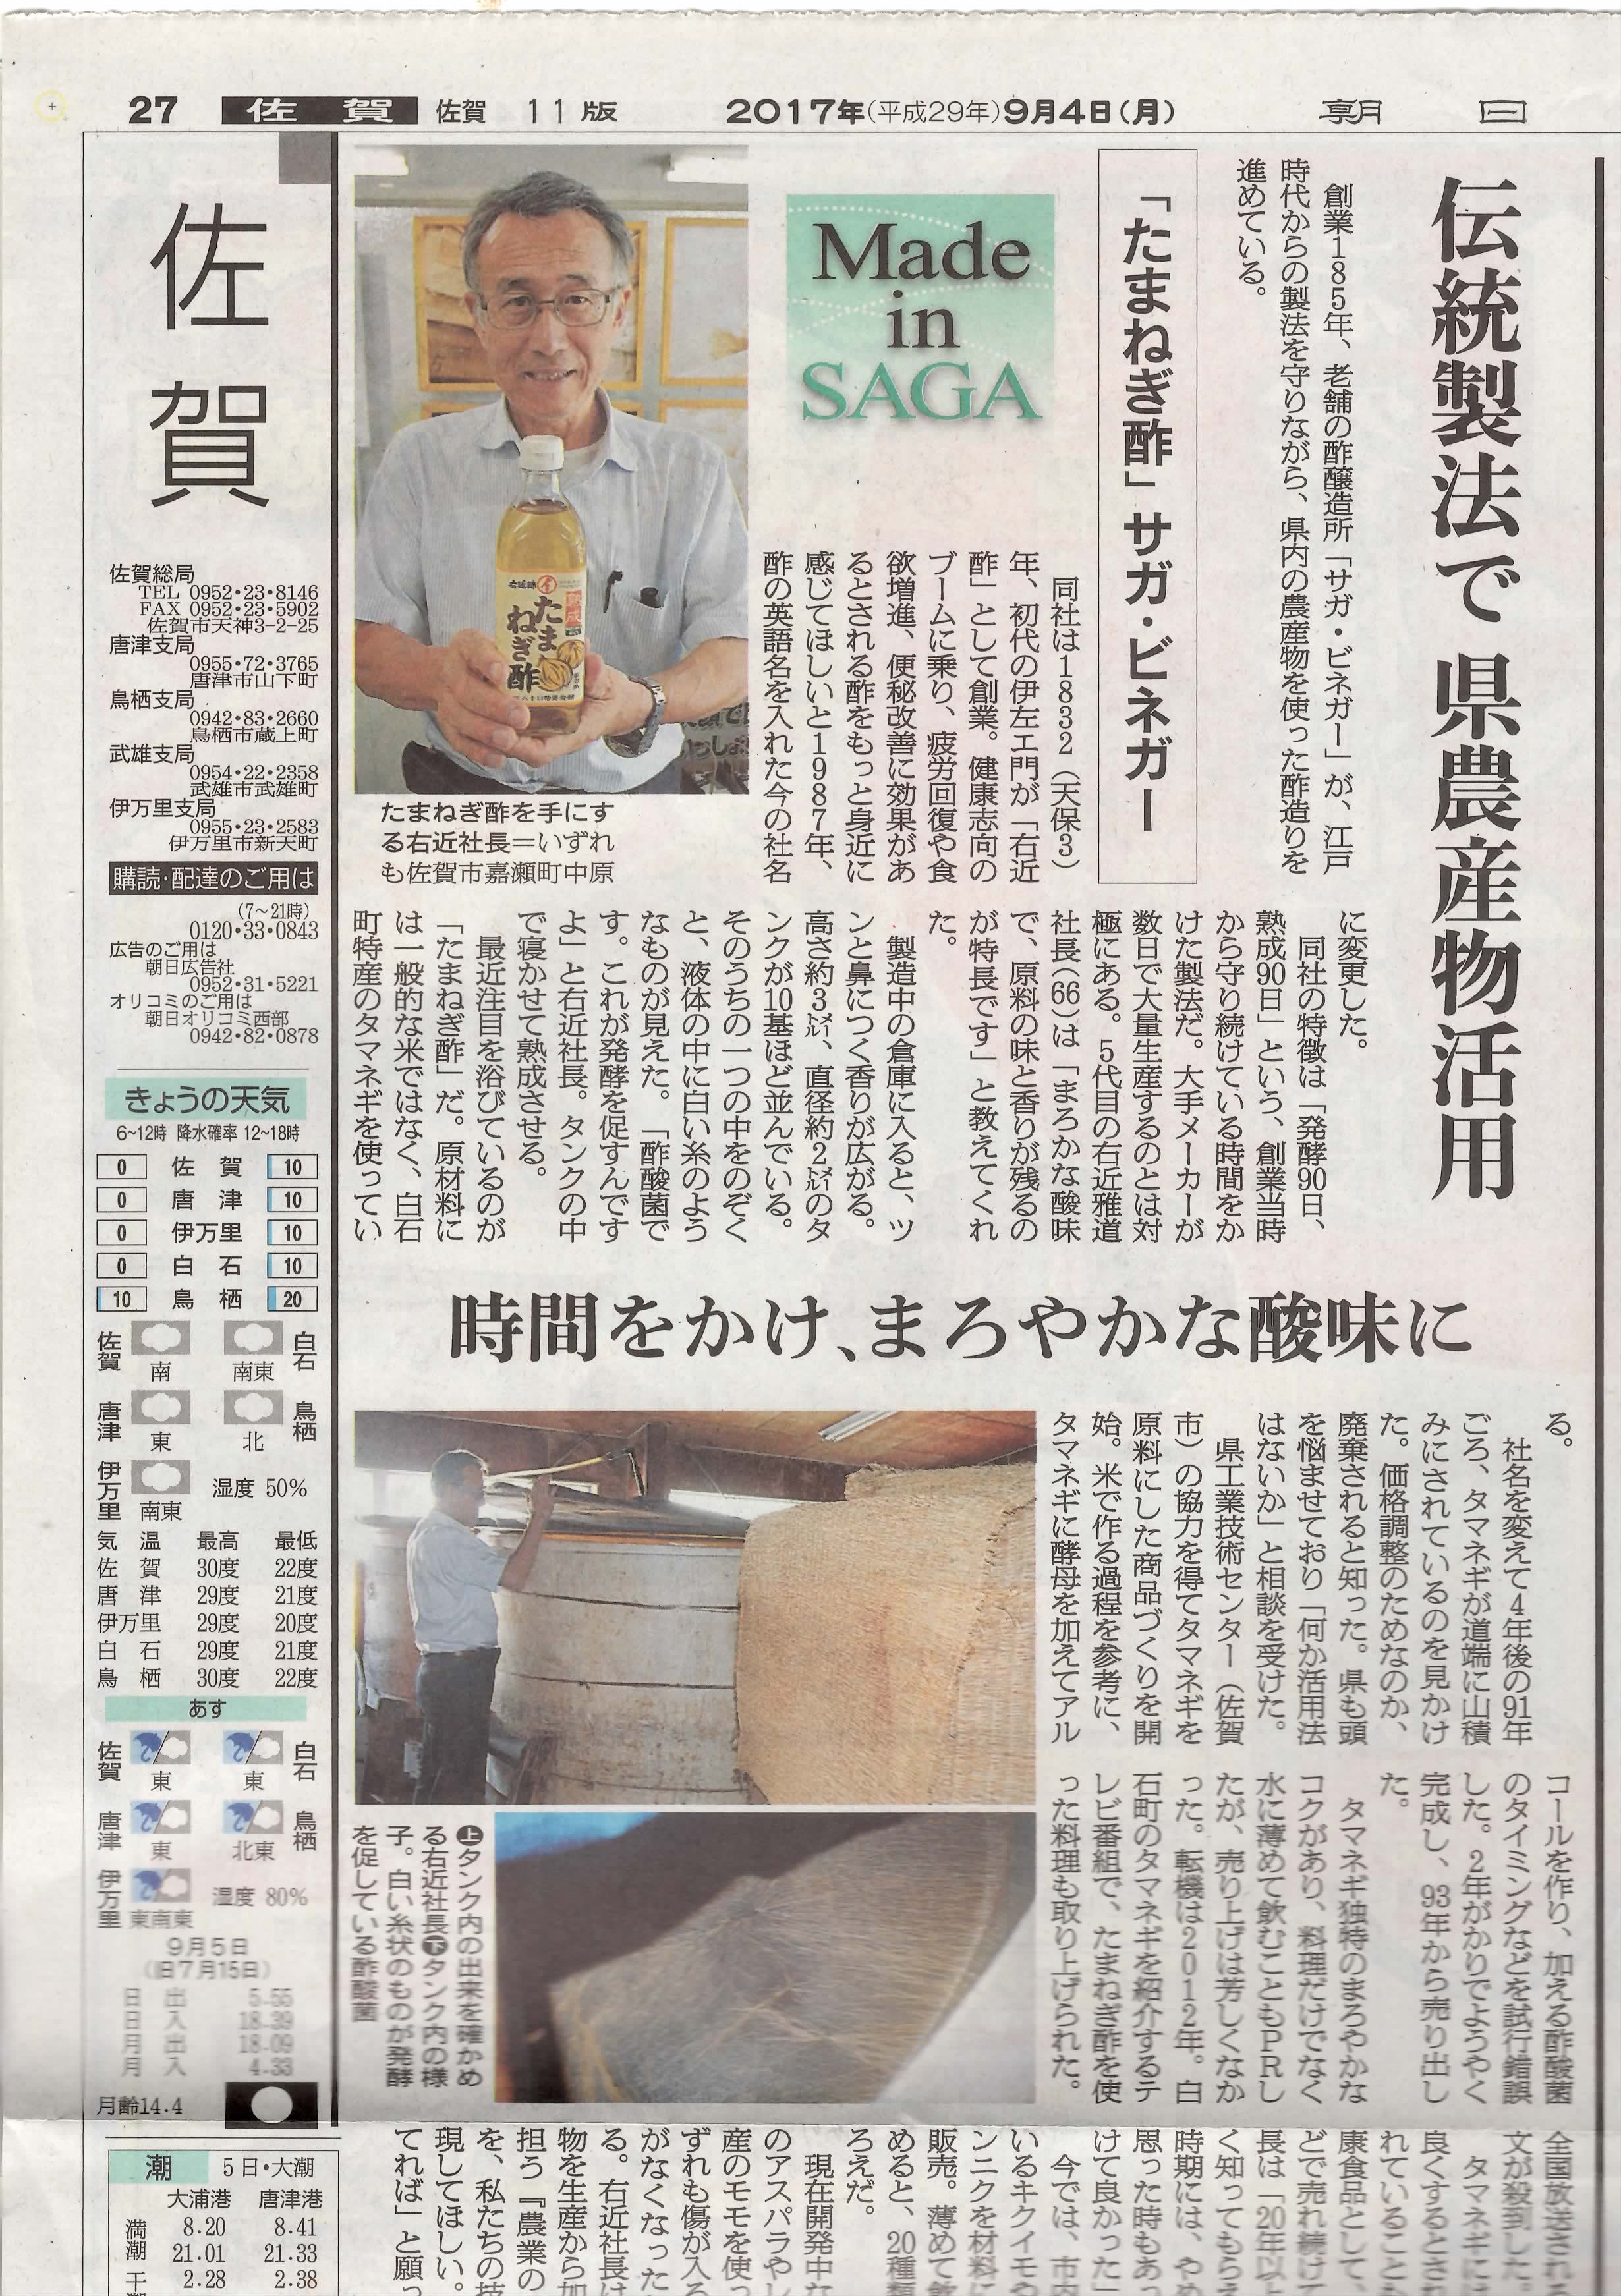 朝日新聞社「伝統製法で県農産物活用」が掲載